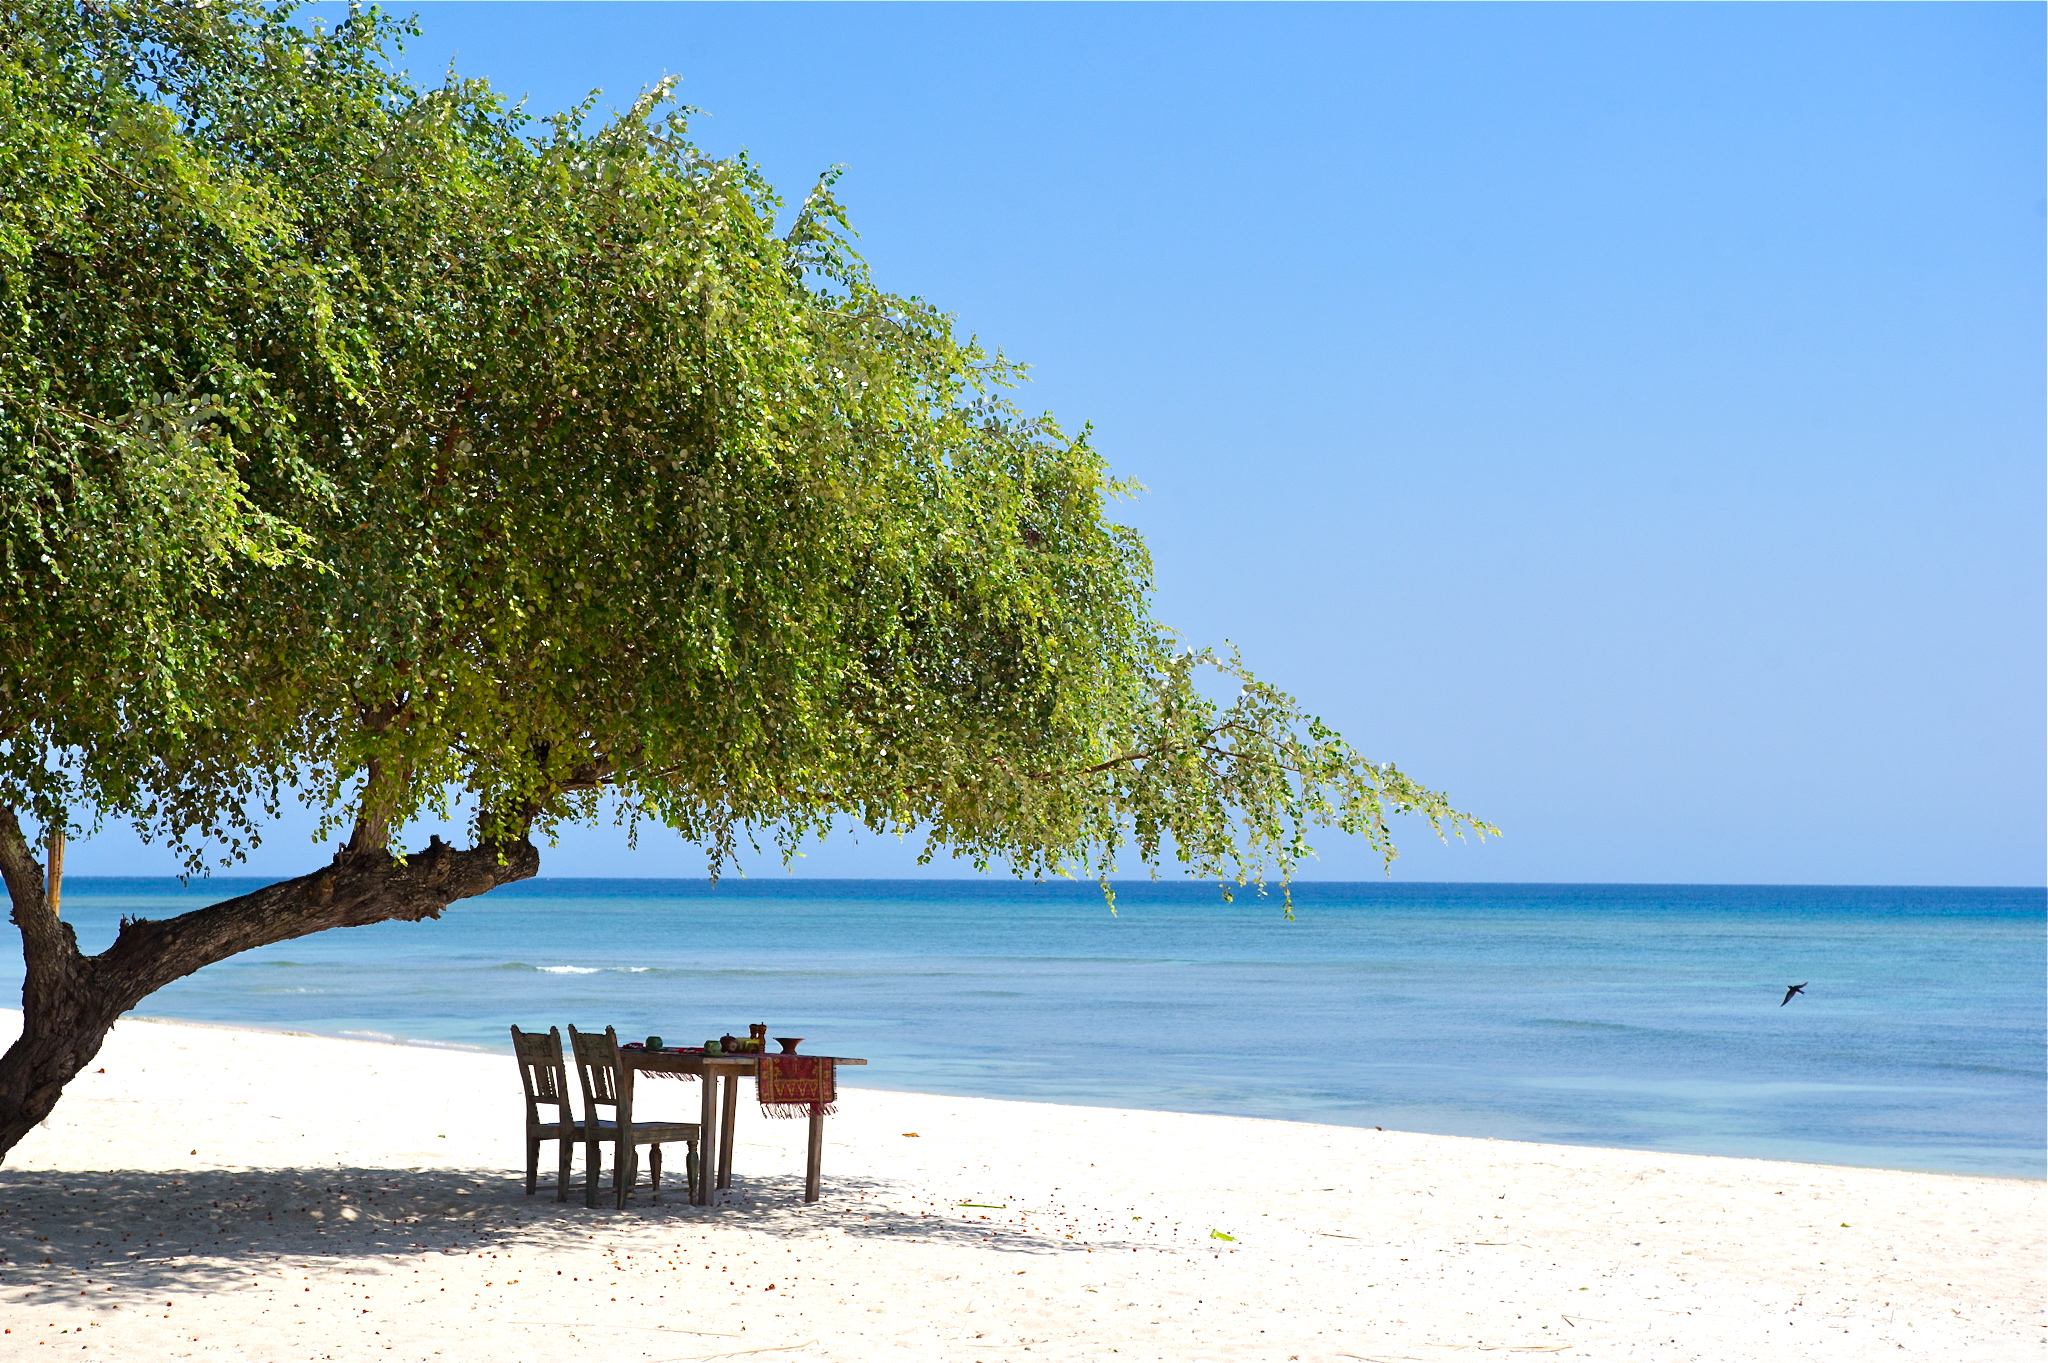 Foto de Pantai Sire - lugar popular entre los conocedores del relax